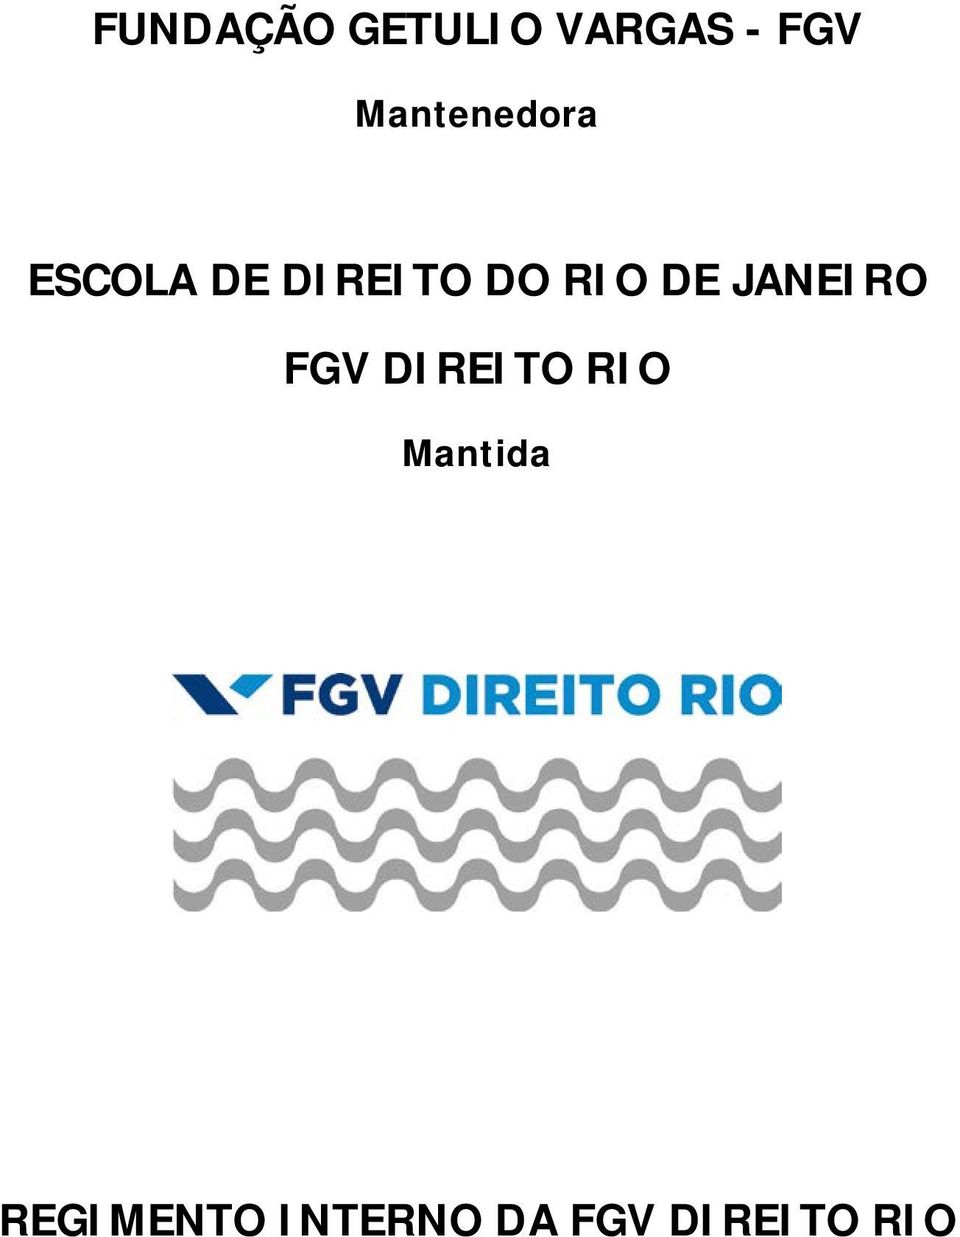 RIO DE JANEIRO FGV DIREITO RIO